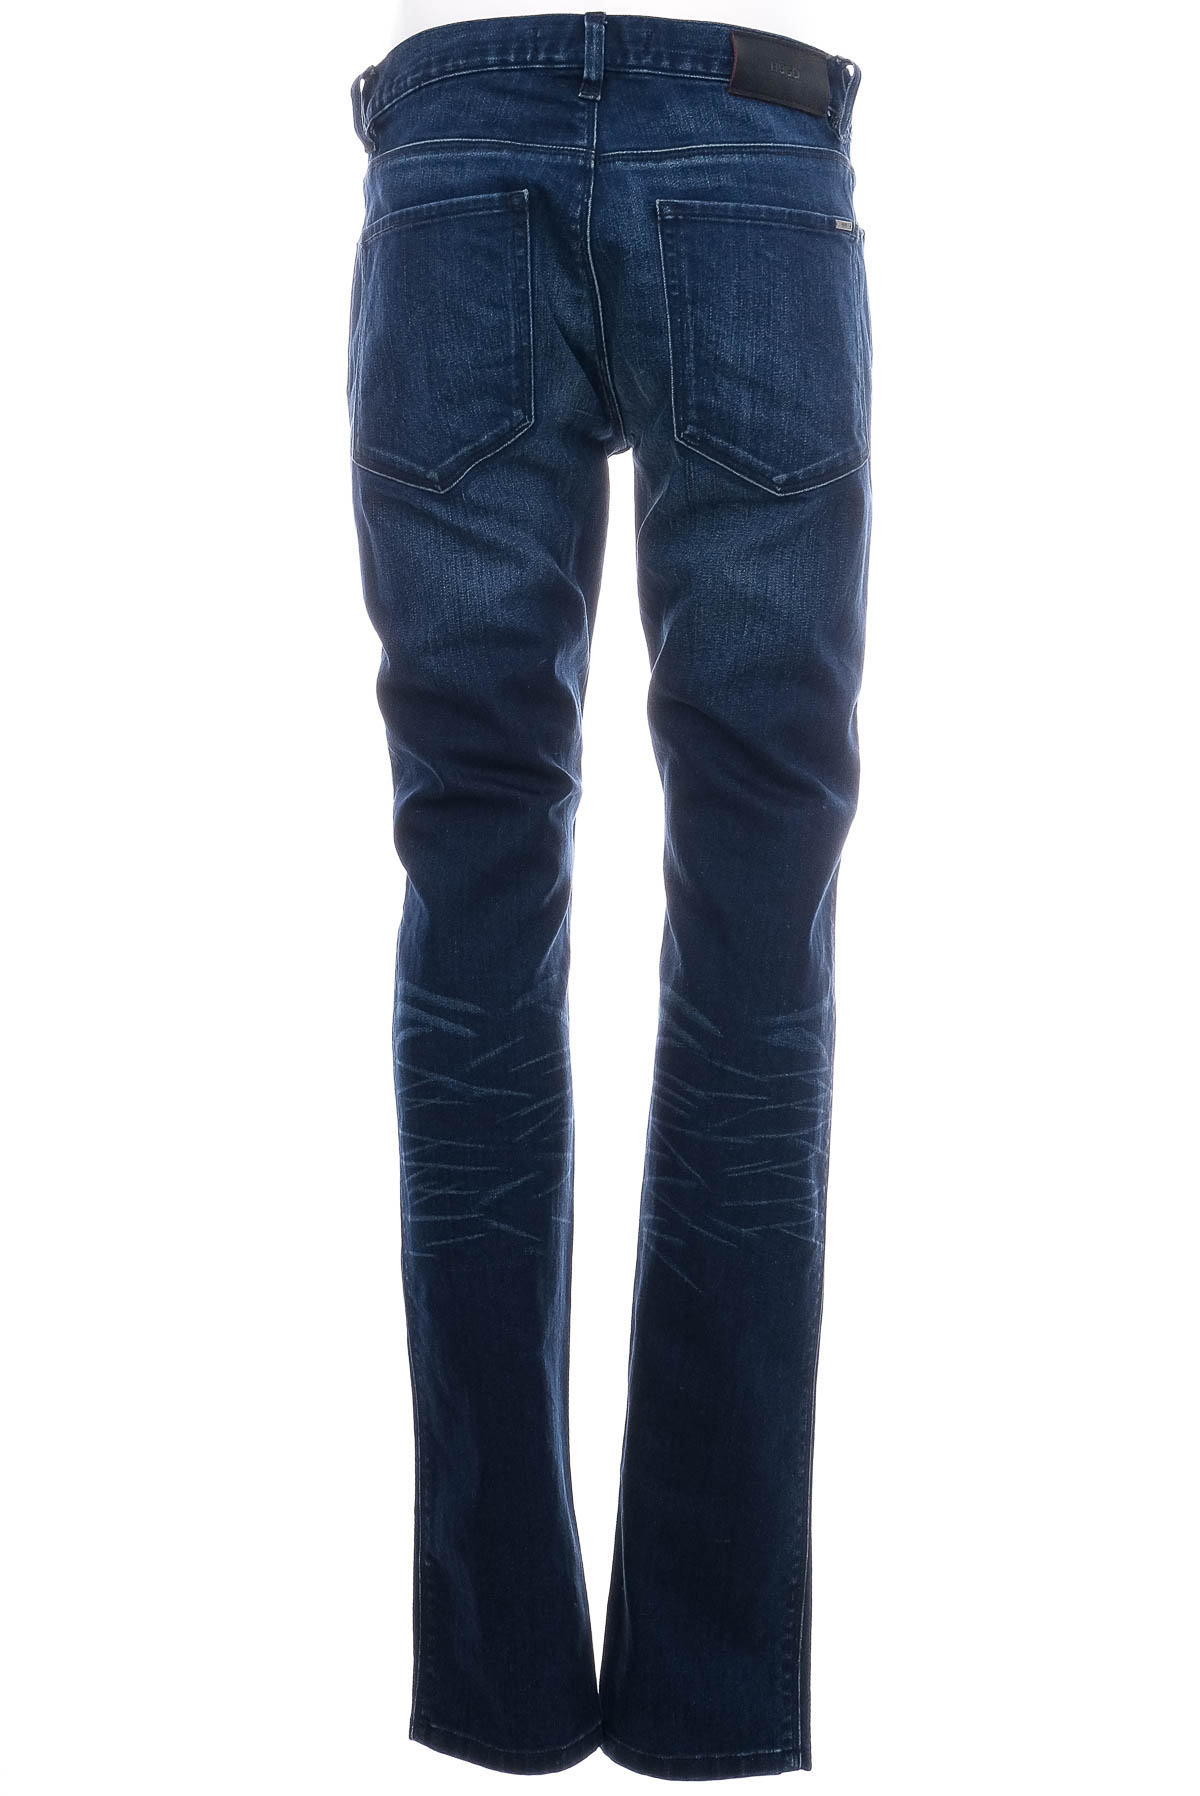 Men's jeans - HUGO BOSS - 1